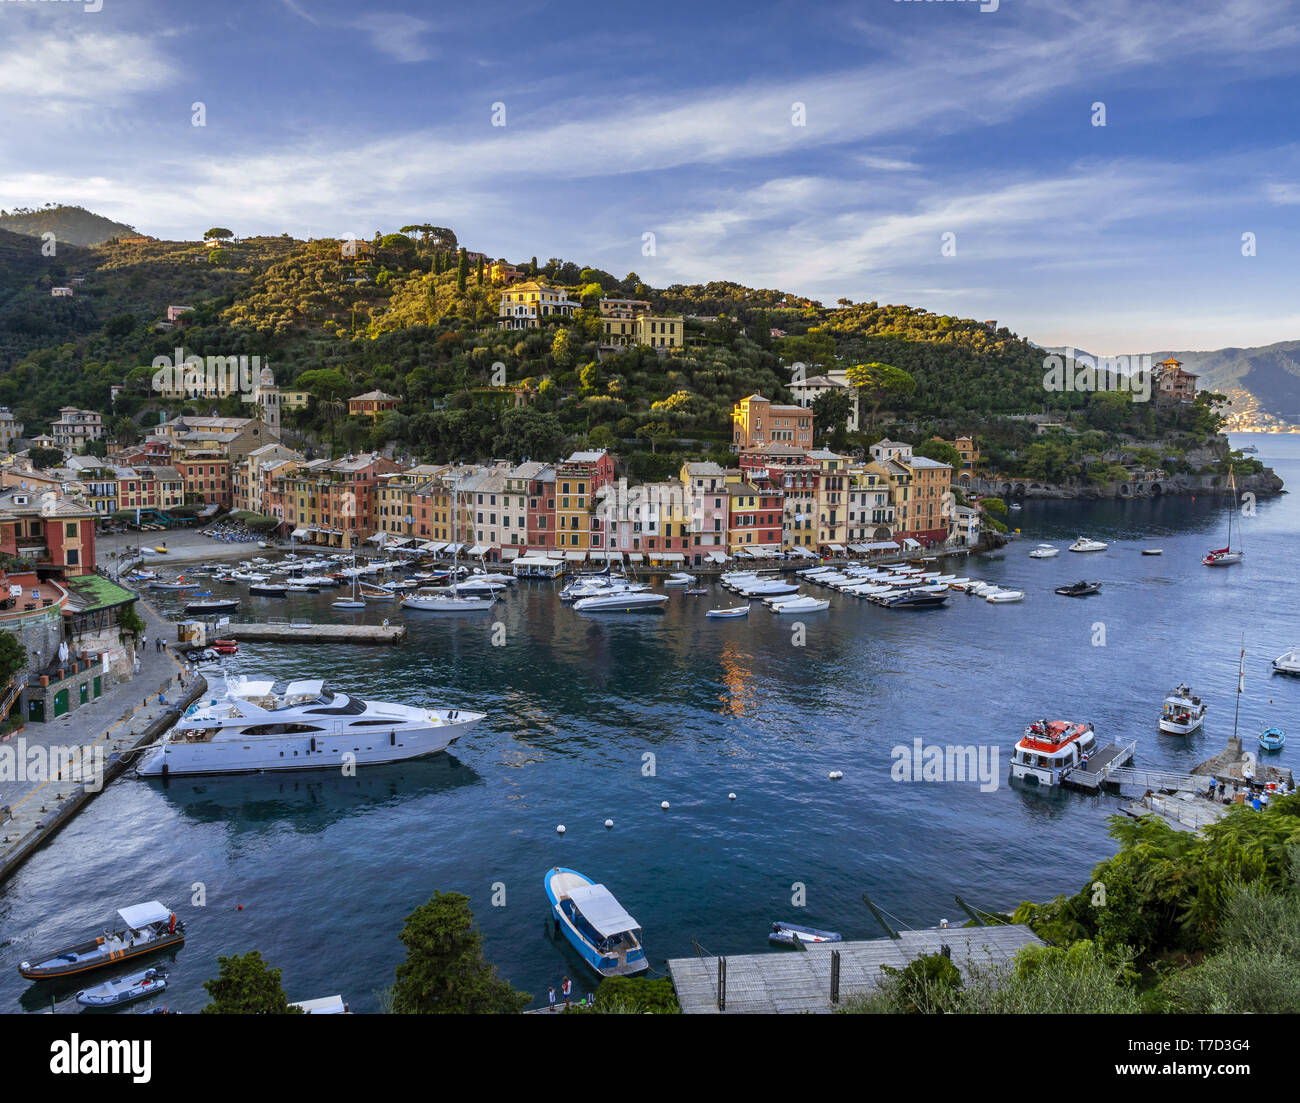 Vue sur le port de Portofino, Italie Banque D'Images